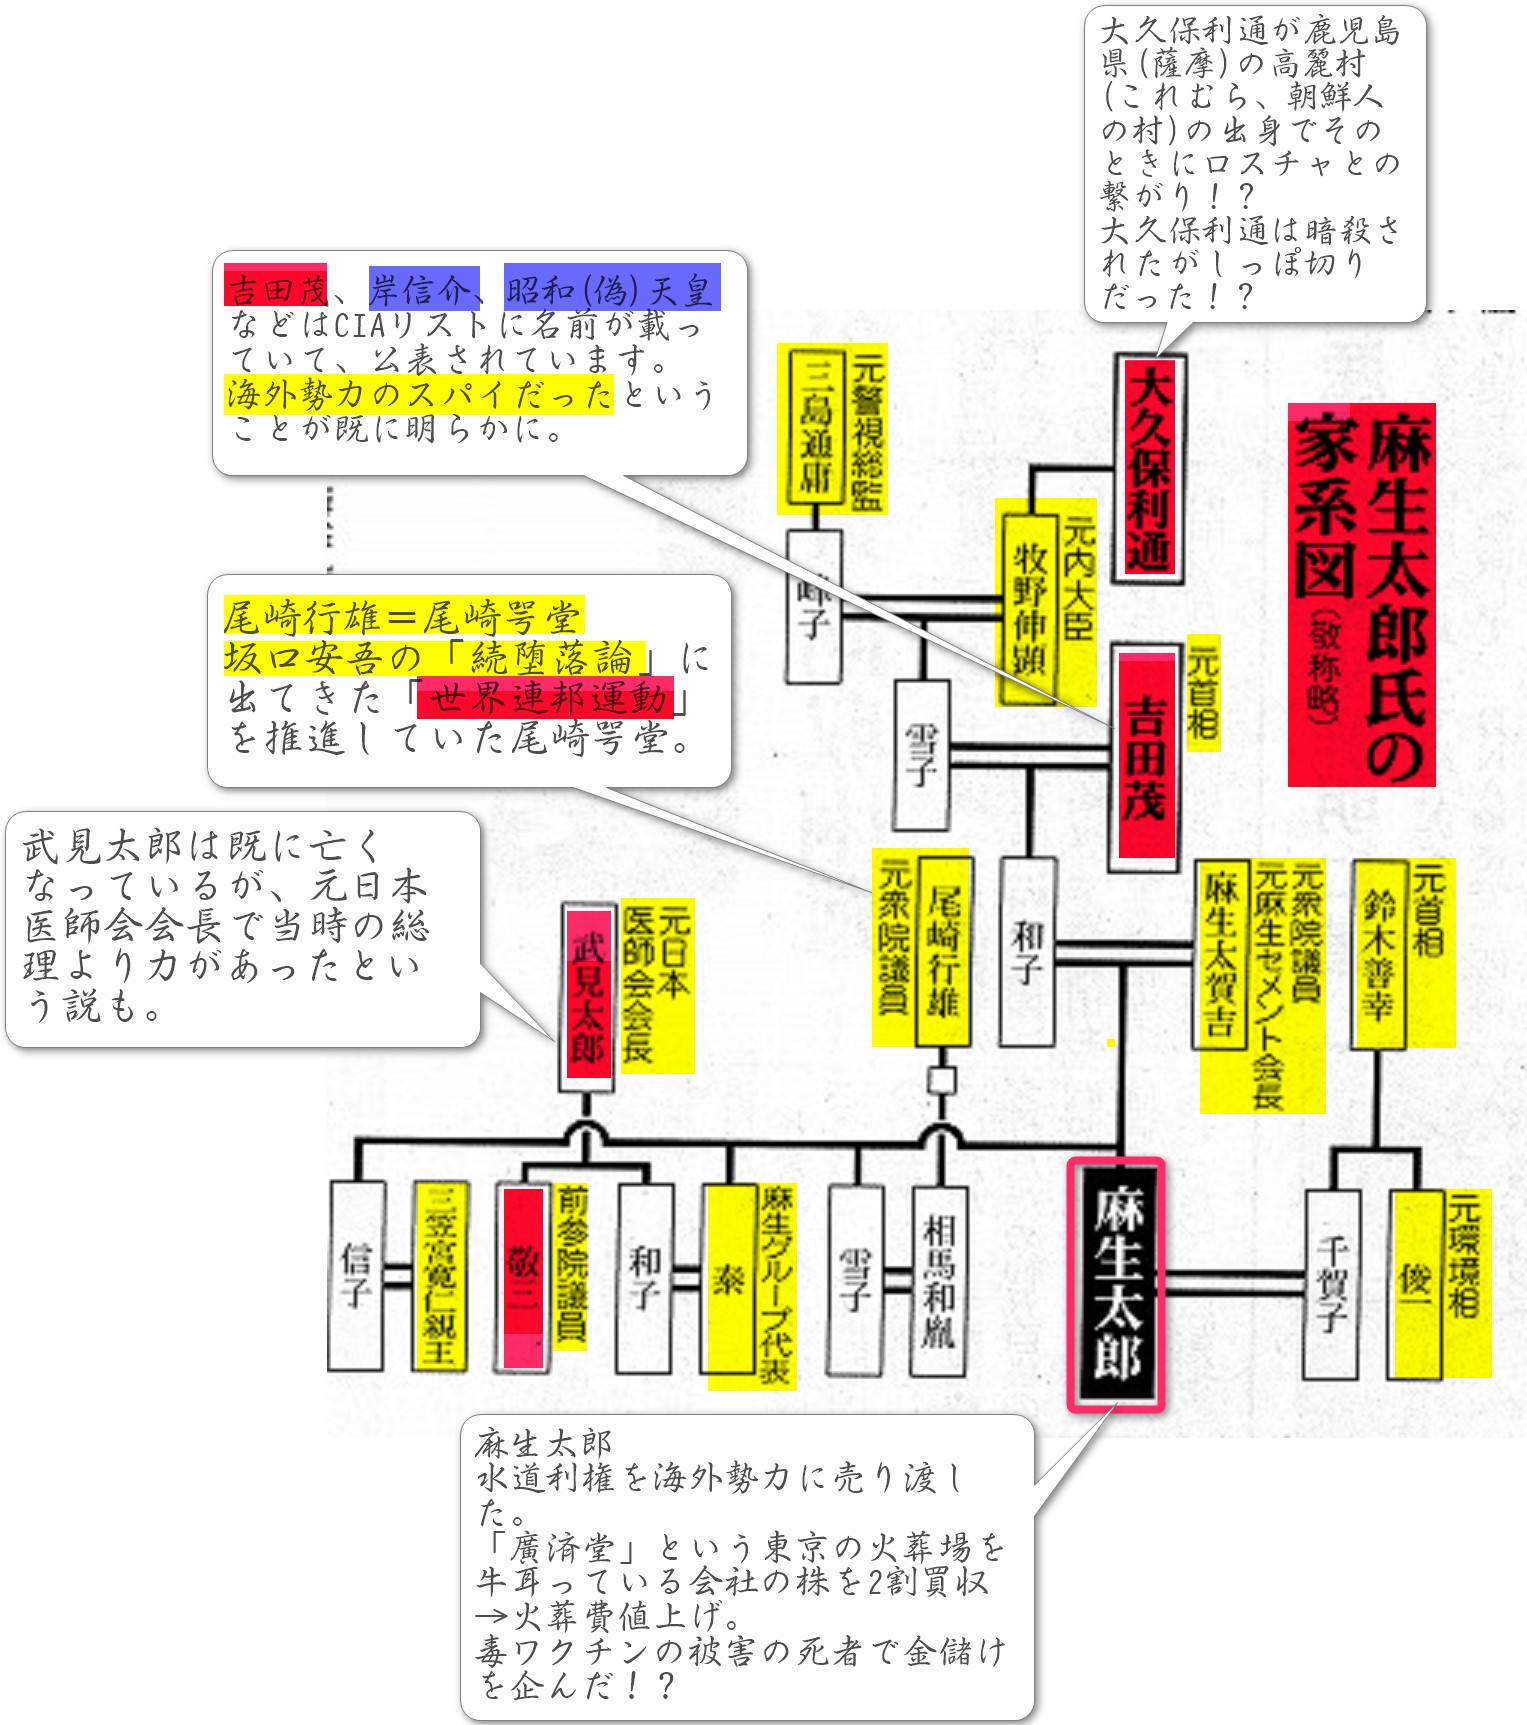 麻生太郎、吉田茂、武見太郎、武見敬三などの出来レース一族の家系図20200417075424962 追記あり